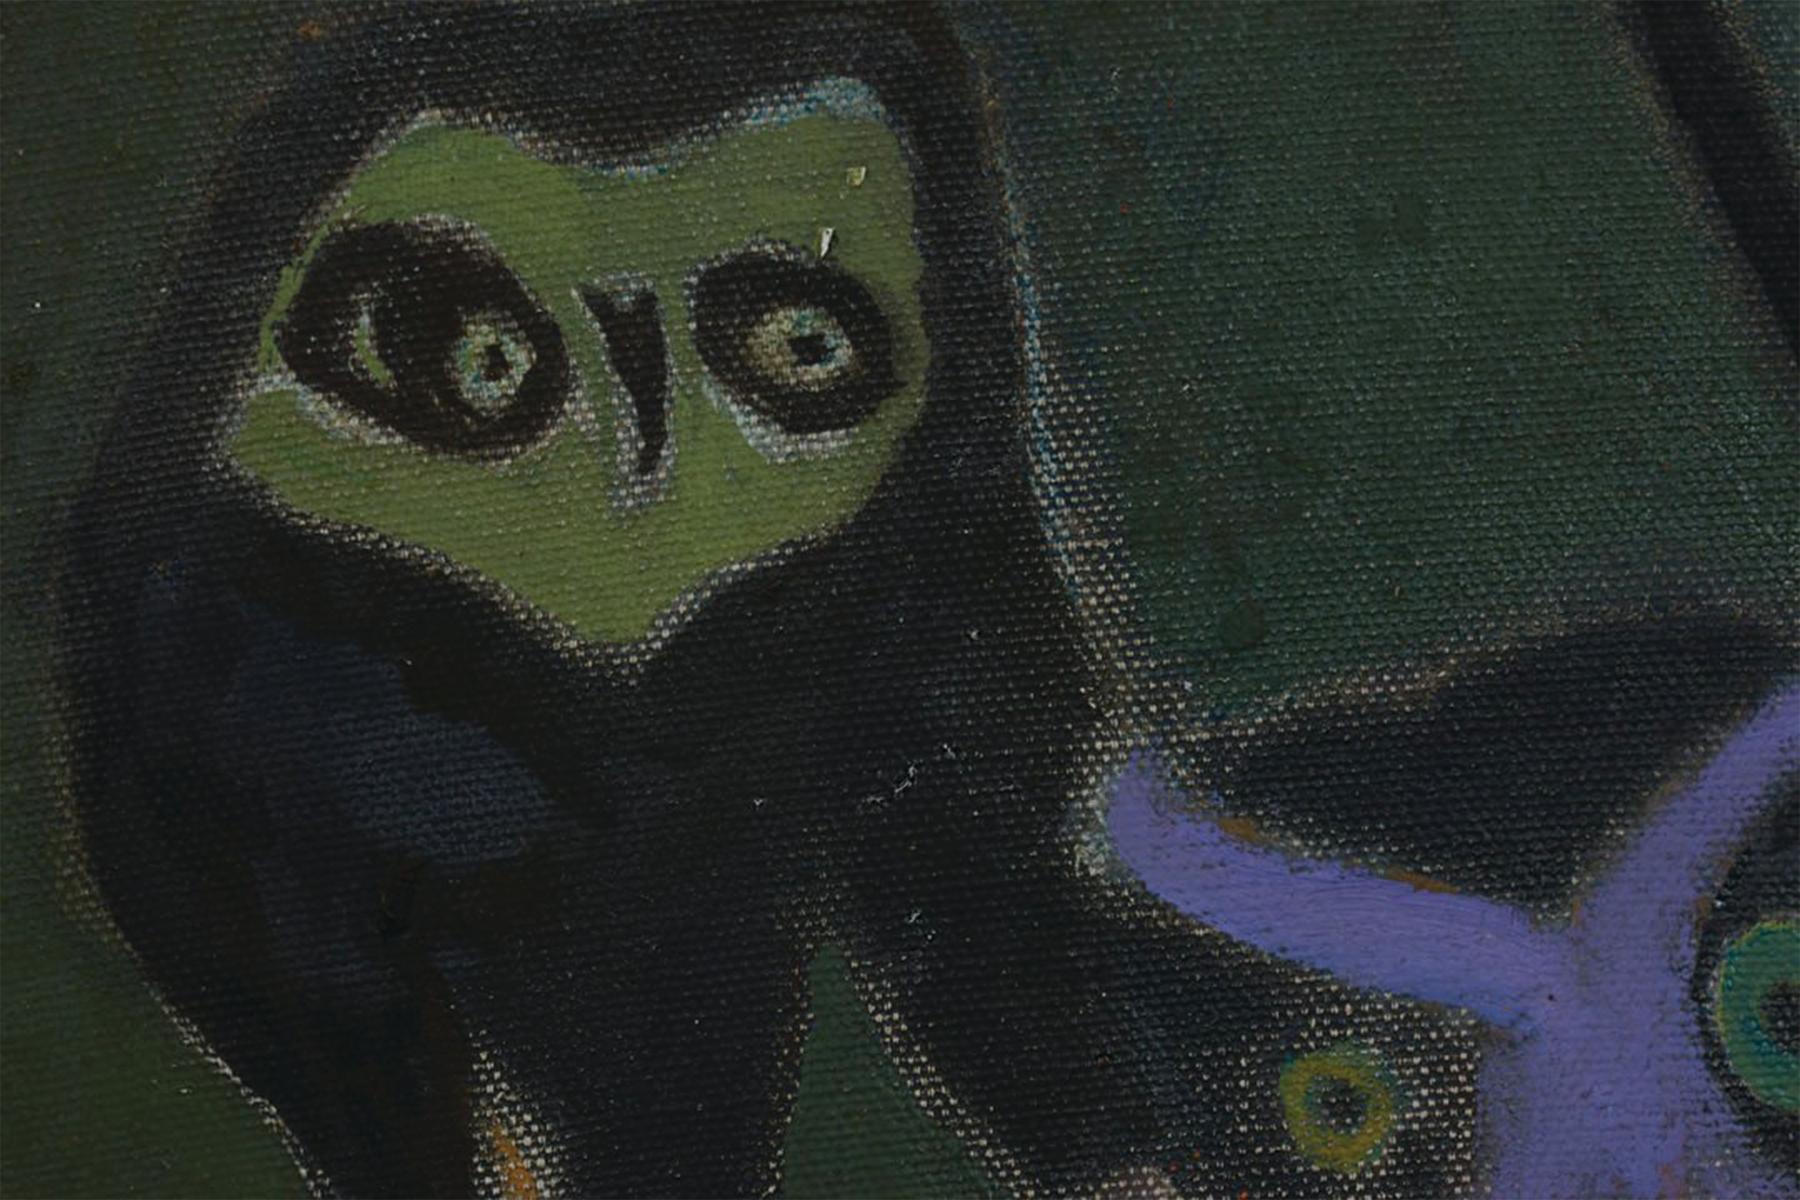 Deux hiboux, 20e siècle - Hiboux violets et verts - Noir Animal Painting par Joseph O'Sickey